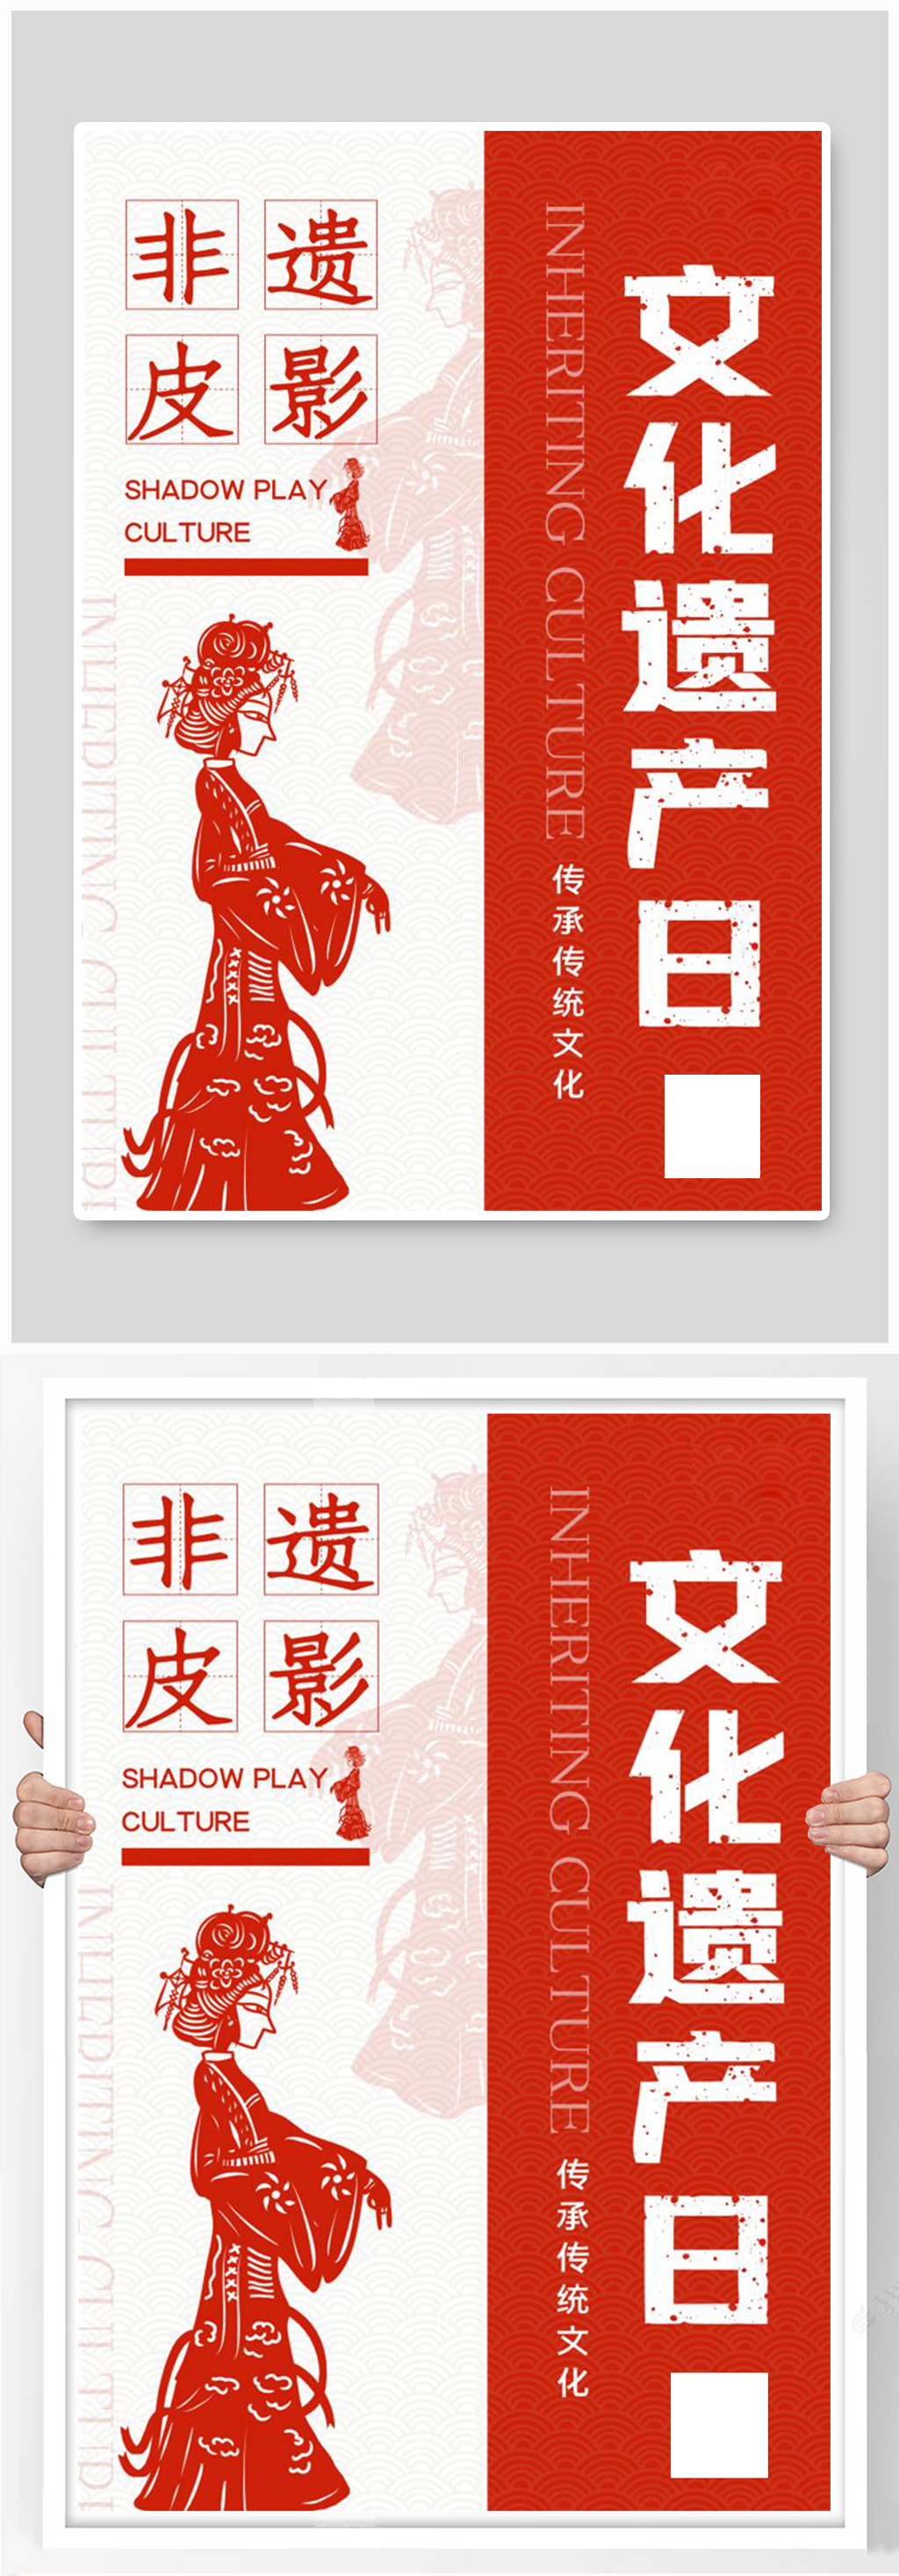 非遗皮影文化遗产日中国风宣传海报